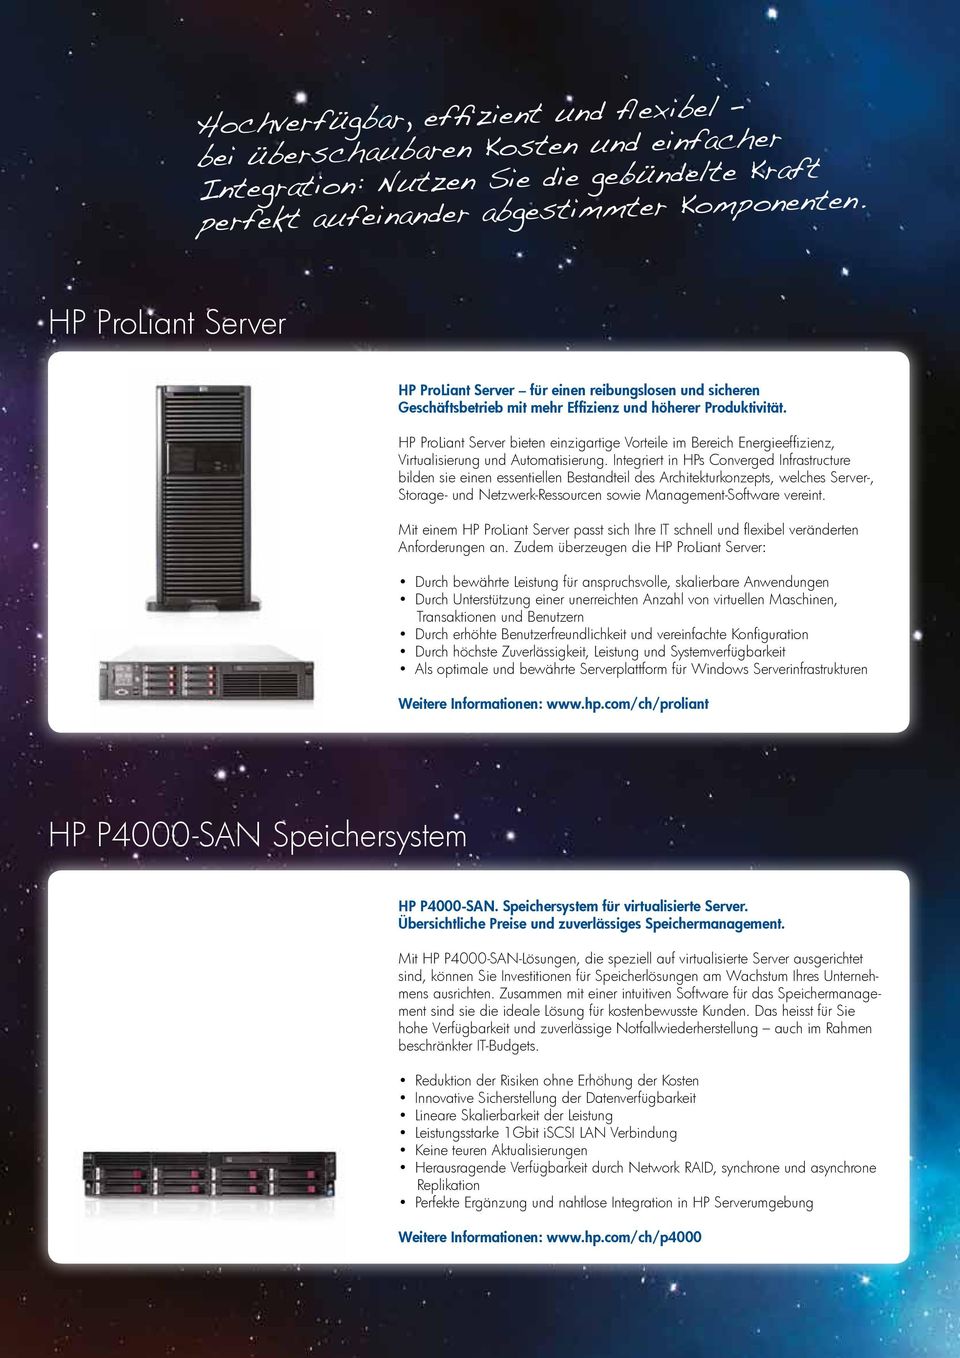 HP ProLiant Server bieten einzigartige Vorteile im Bereich Energieeffizienz, Virtualisierung und Automatisierung.